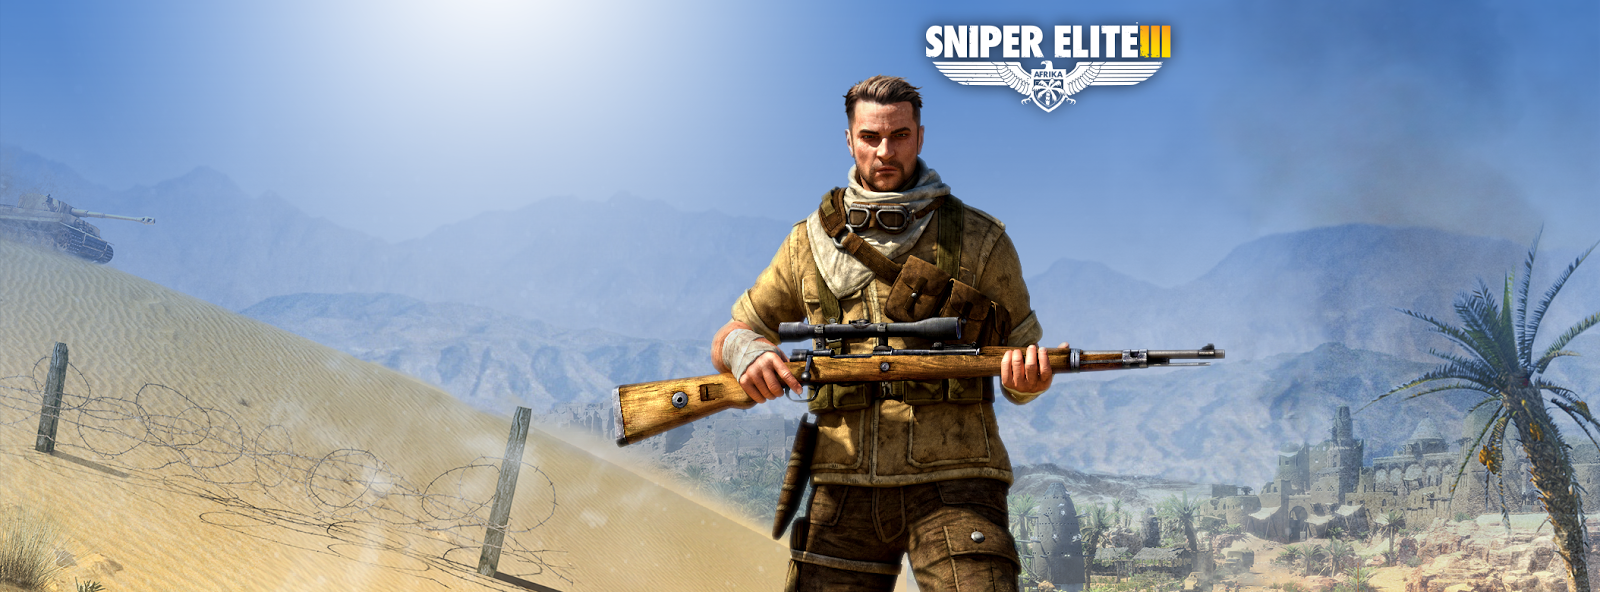 Spesifikasi PC Untuk Sniper Elite 3 (505 Games) 